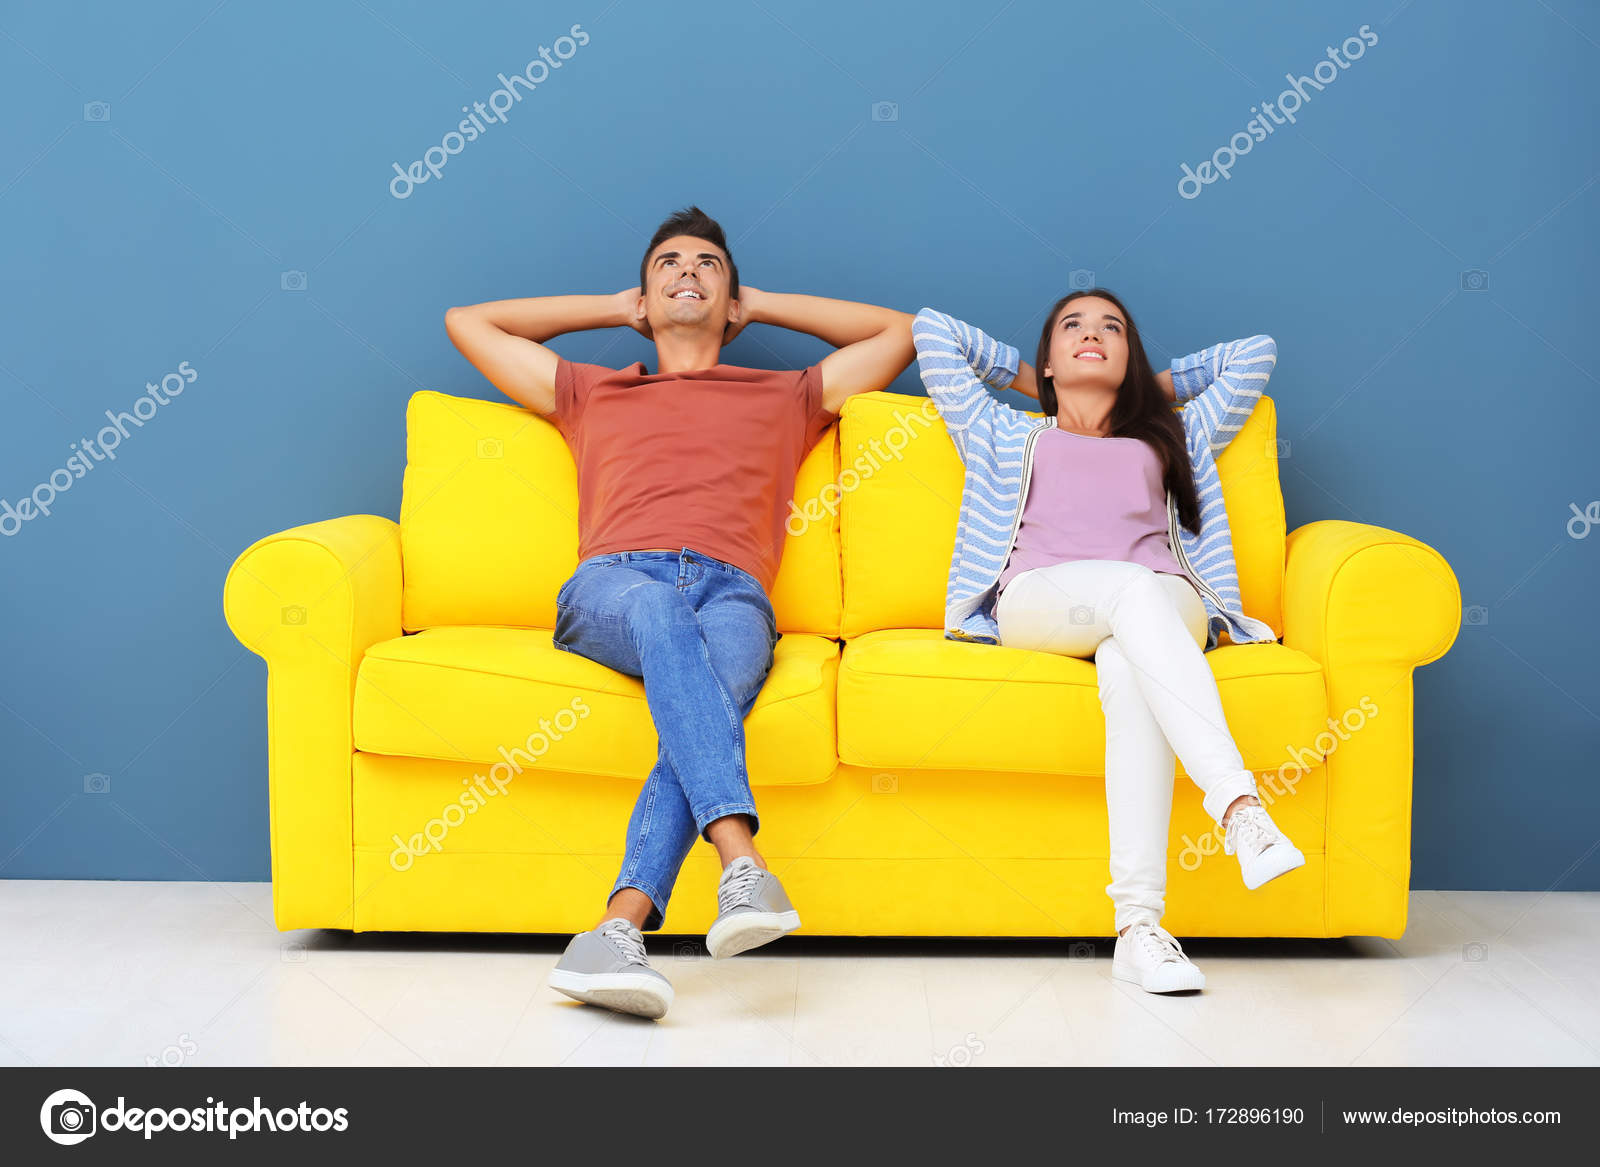 Розовое происшествие на жёлтом диване